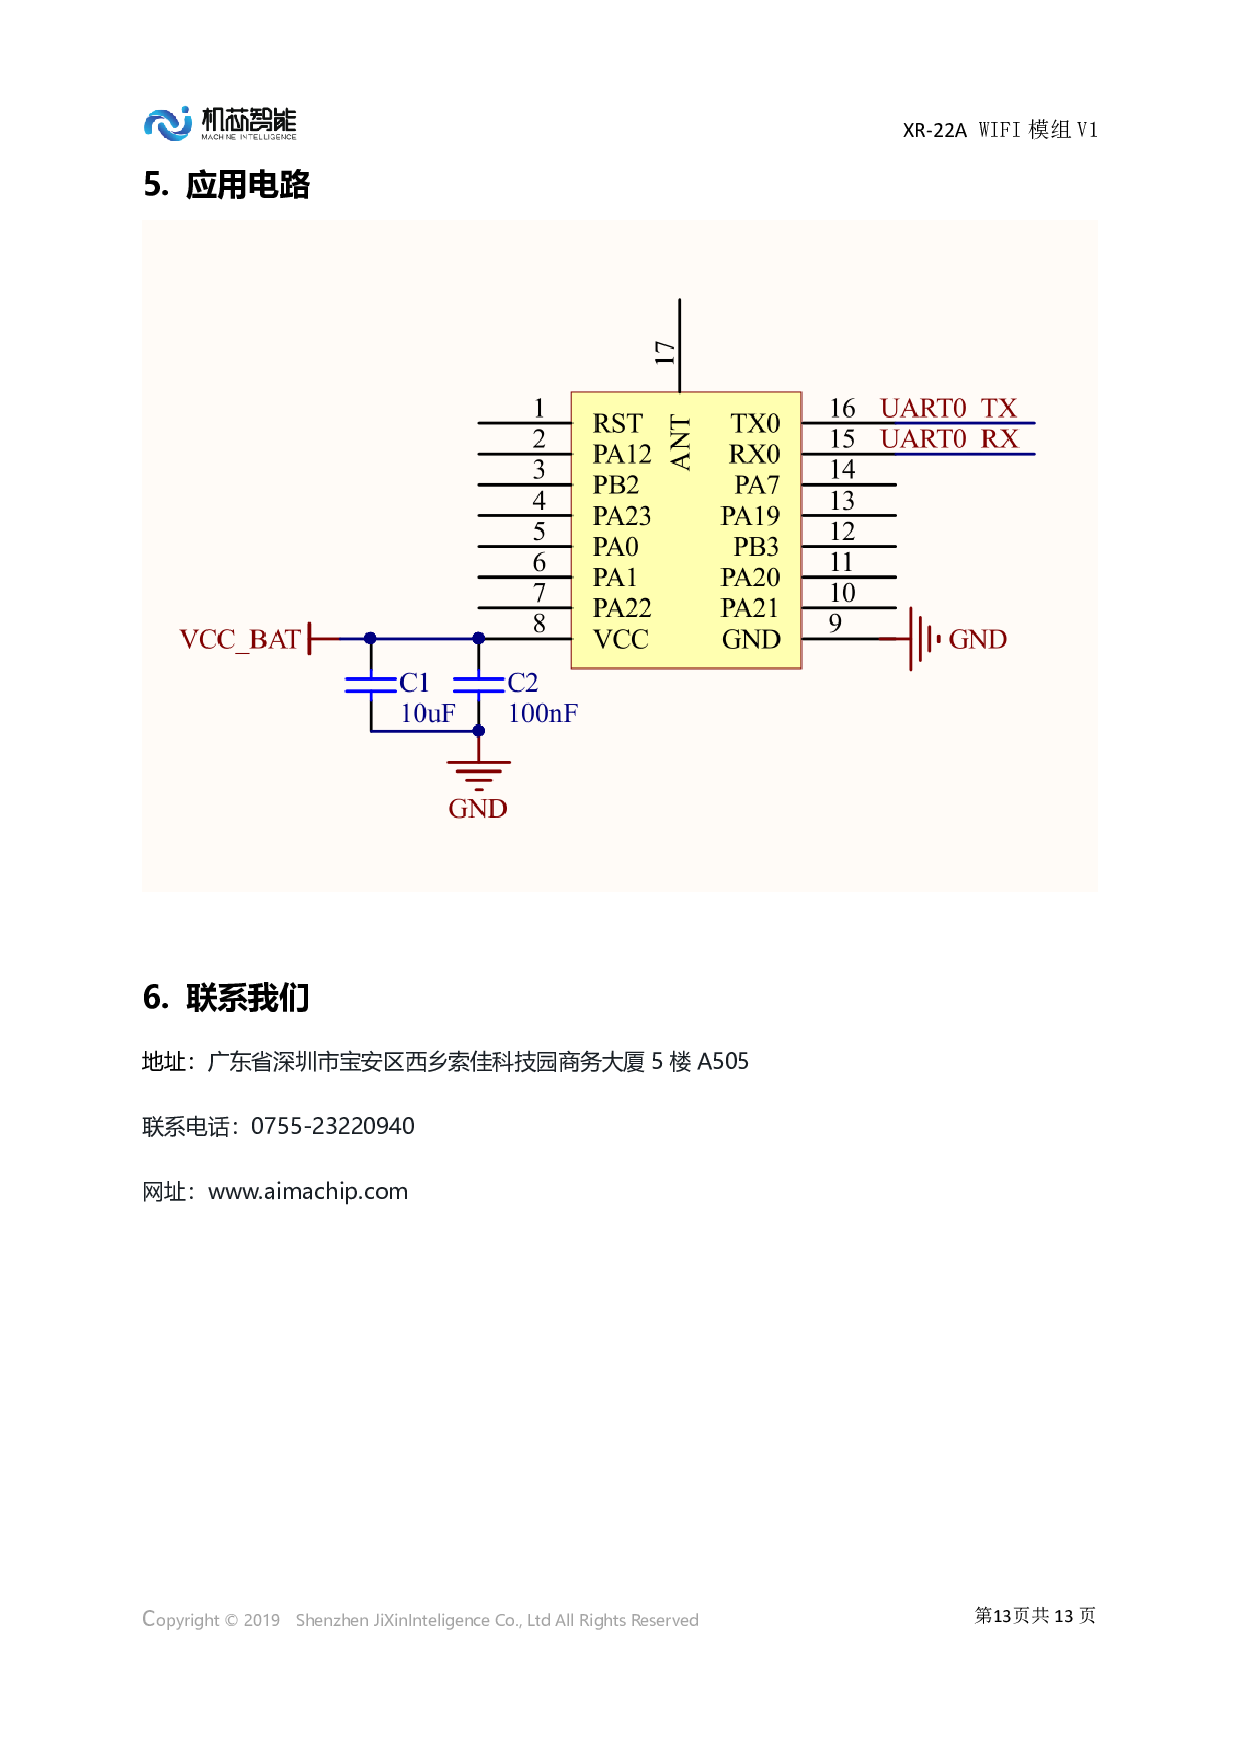 XR808/wifi模组/XR-22A WiFi 模组图片